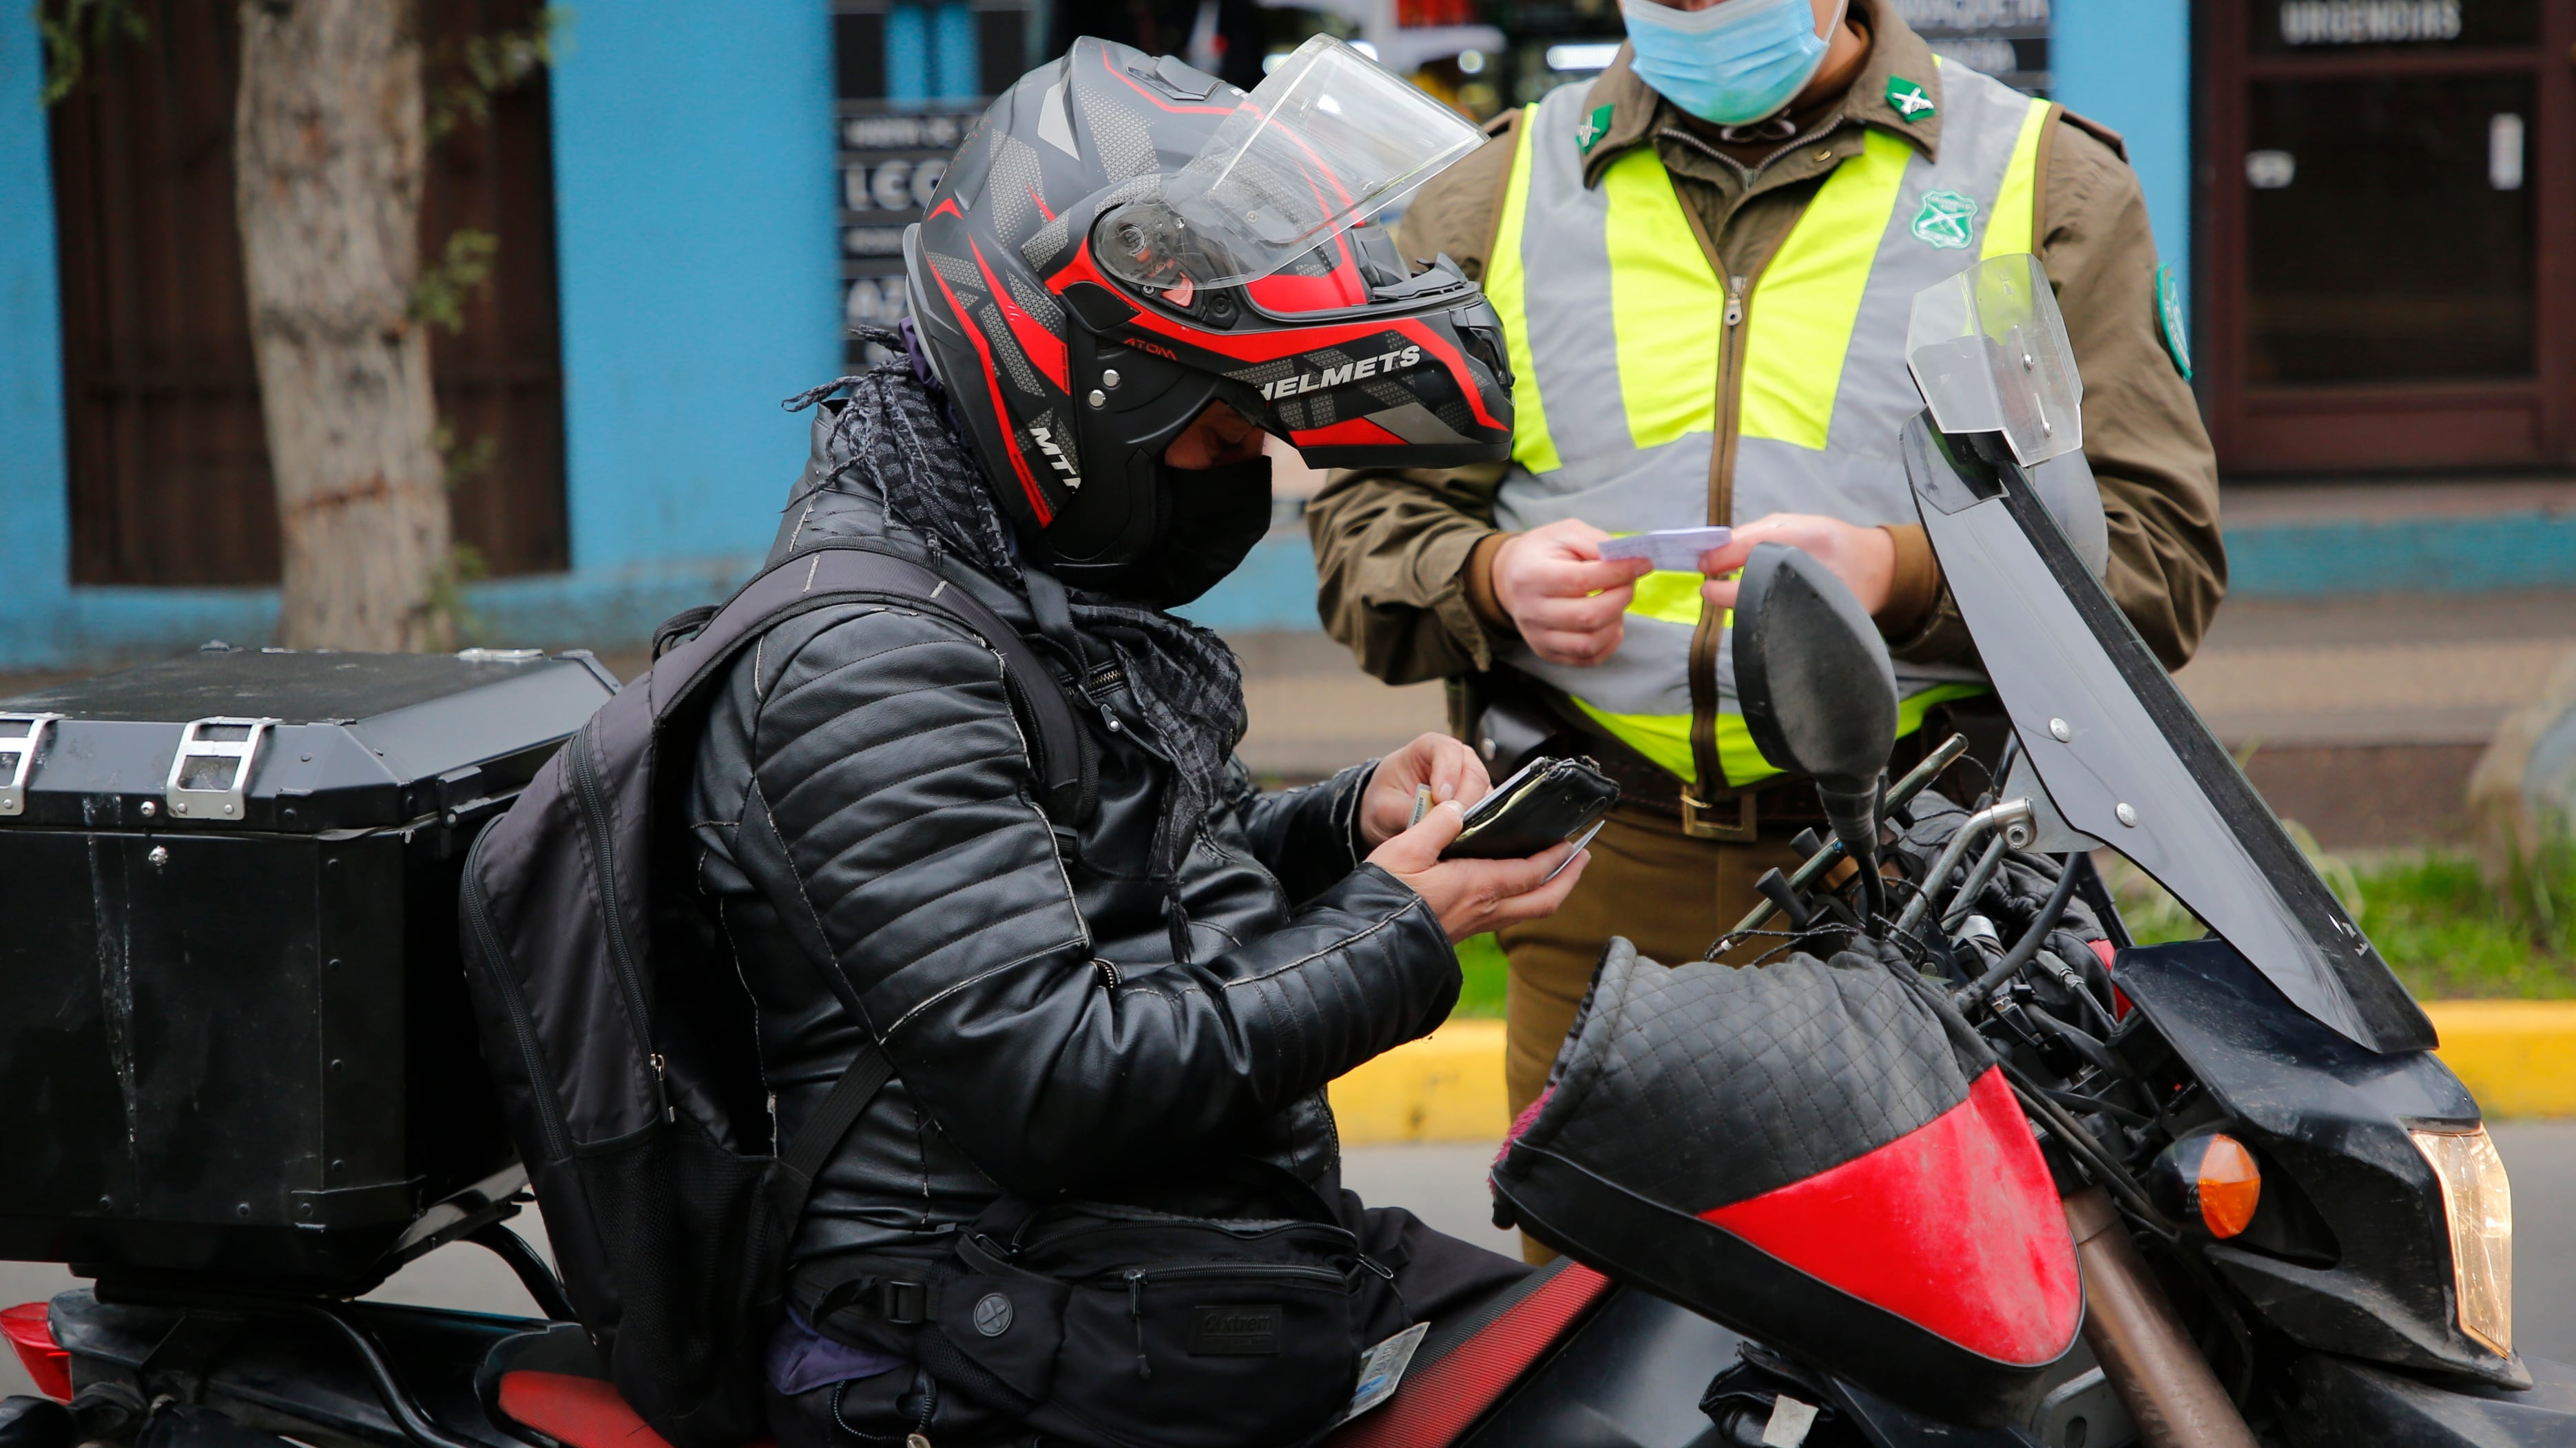 Un estudio proporcionado este miércoles por la Fiscalía en radio Cooperativa reveló que cerca de un centenar de motos inscritas por miembros del Tren de Aragua son arrendadas a inmigrantes, en su mayoría ilegales, para realizar delivery en el norte de Chile.